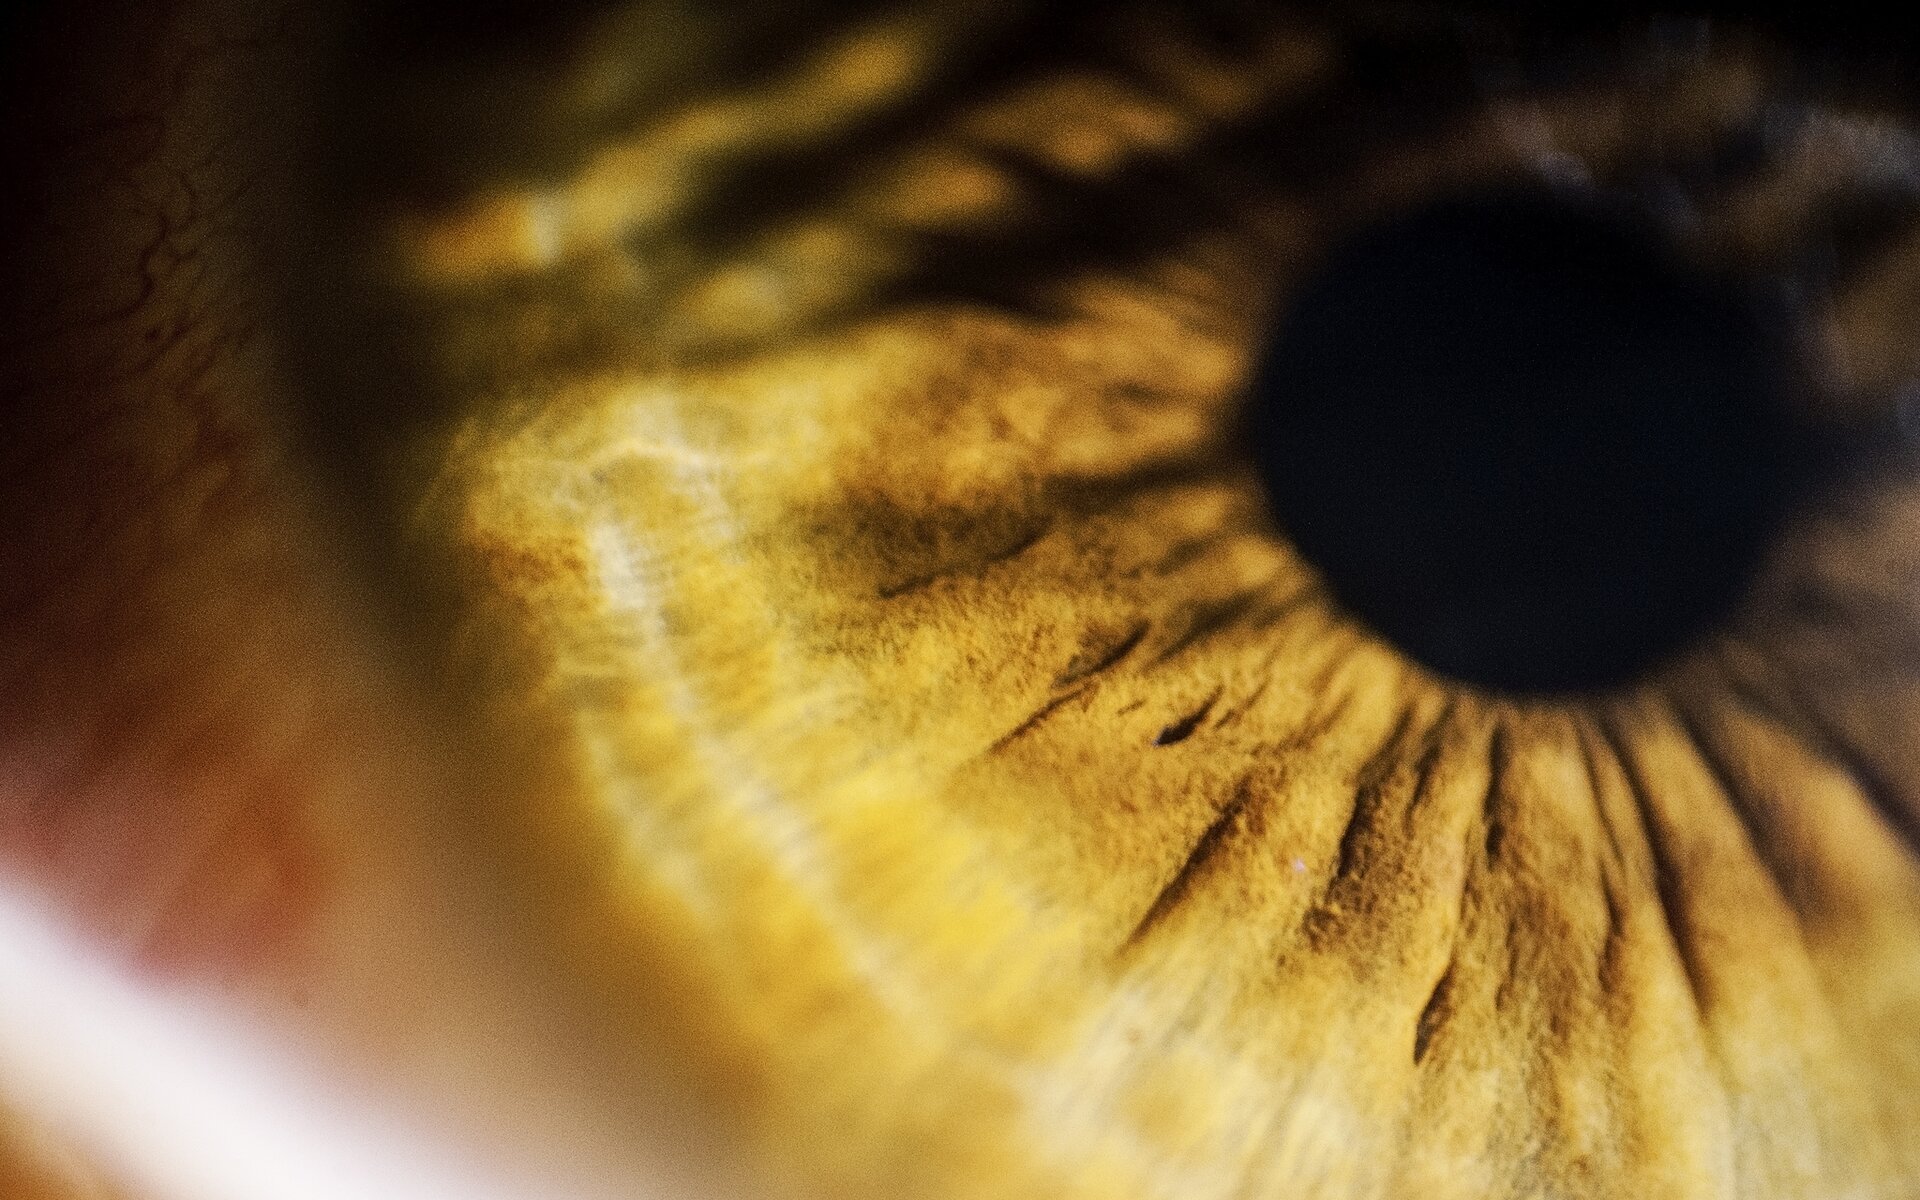 Ilustracja przedstawia czarny wąski otwór w oku człowieka – źrenicę, przez którą wpada światło.